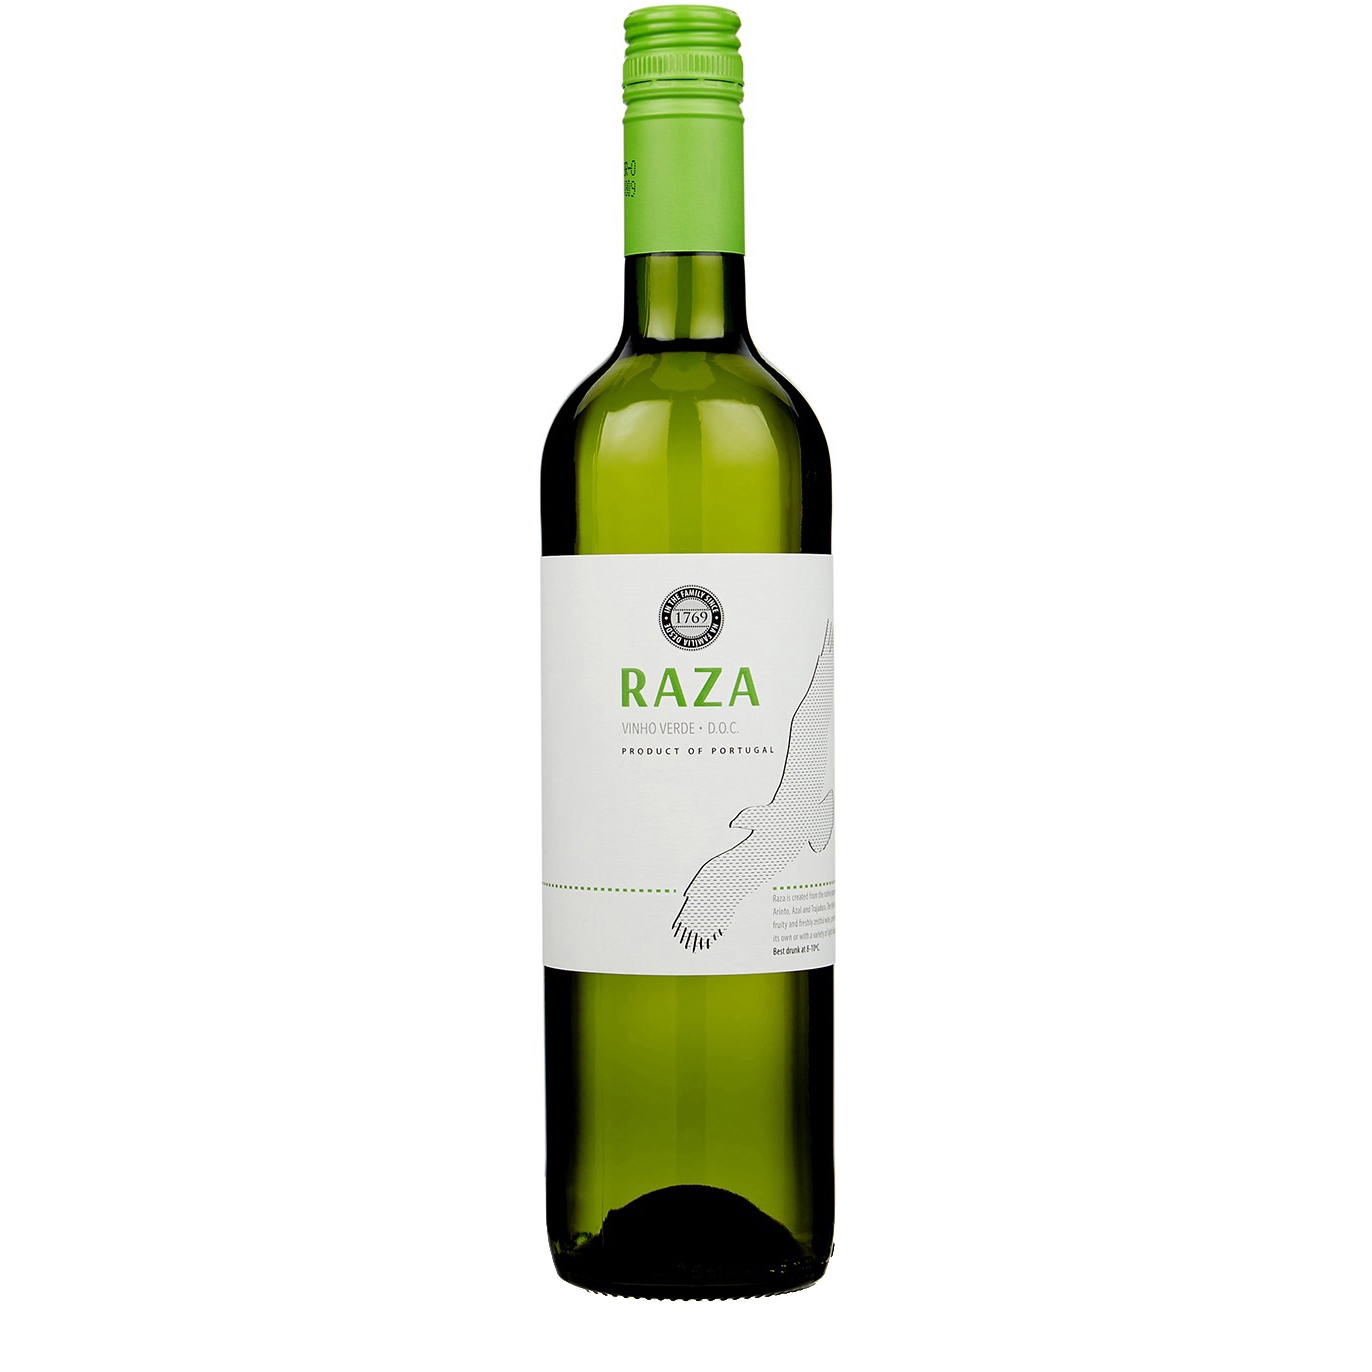 Quinta Da Raza Raza Vinho Verde 2021 White Wine